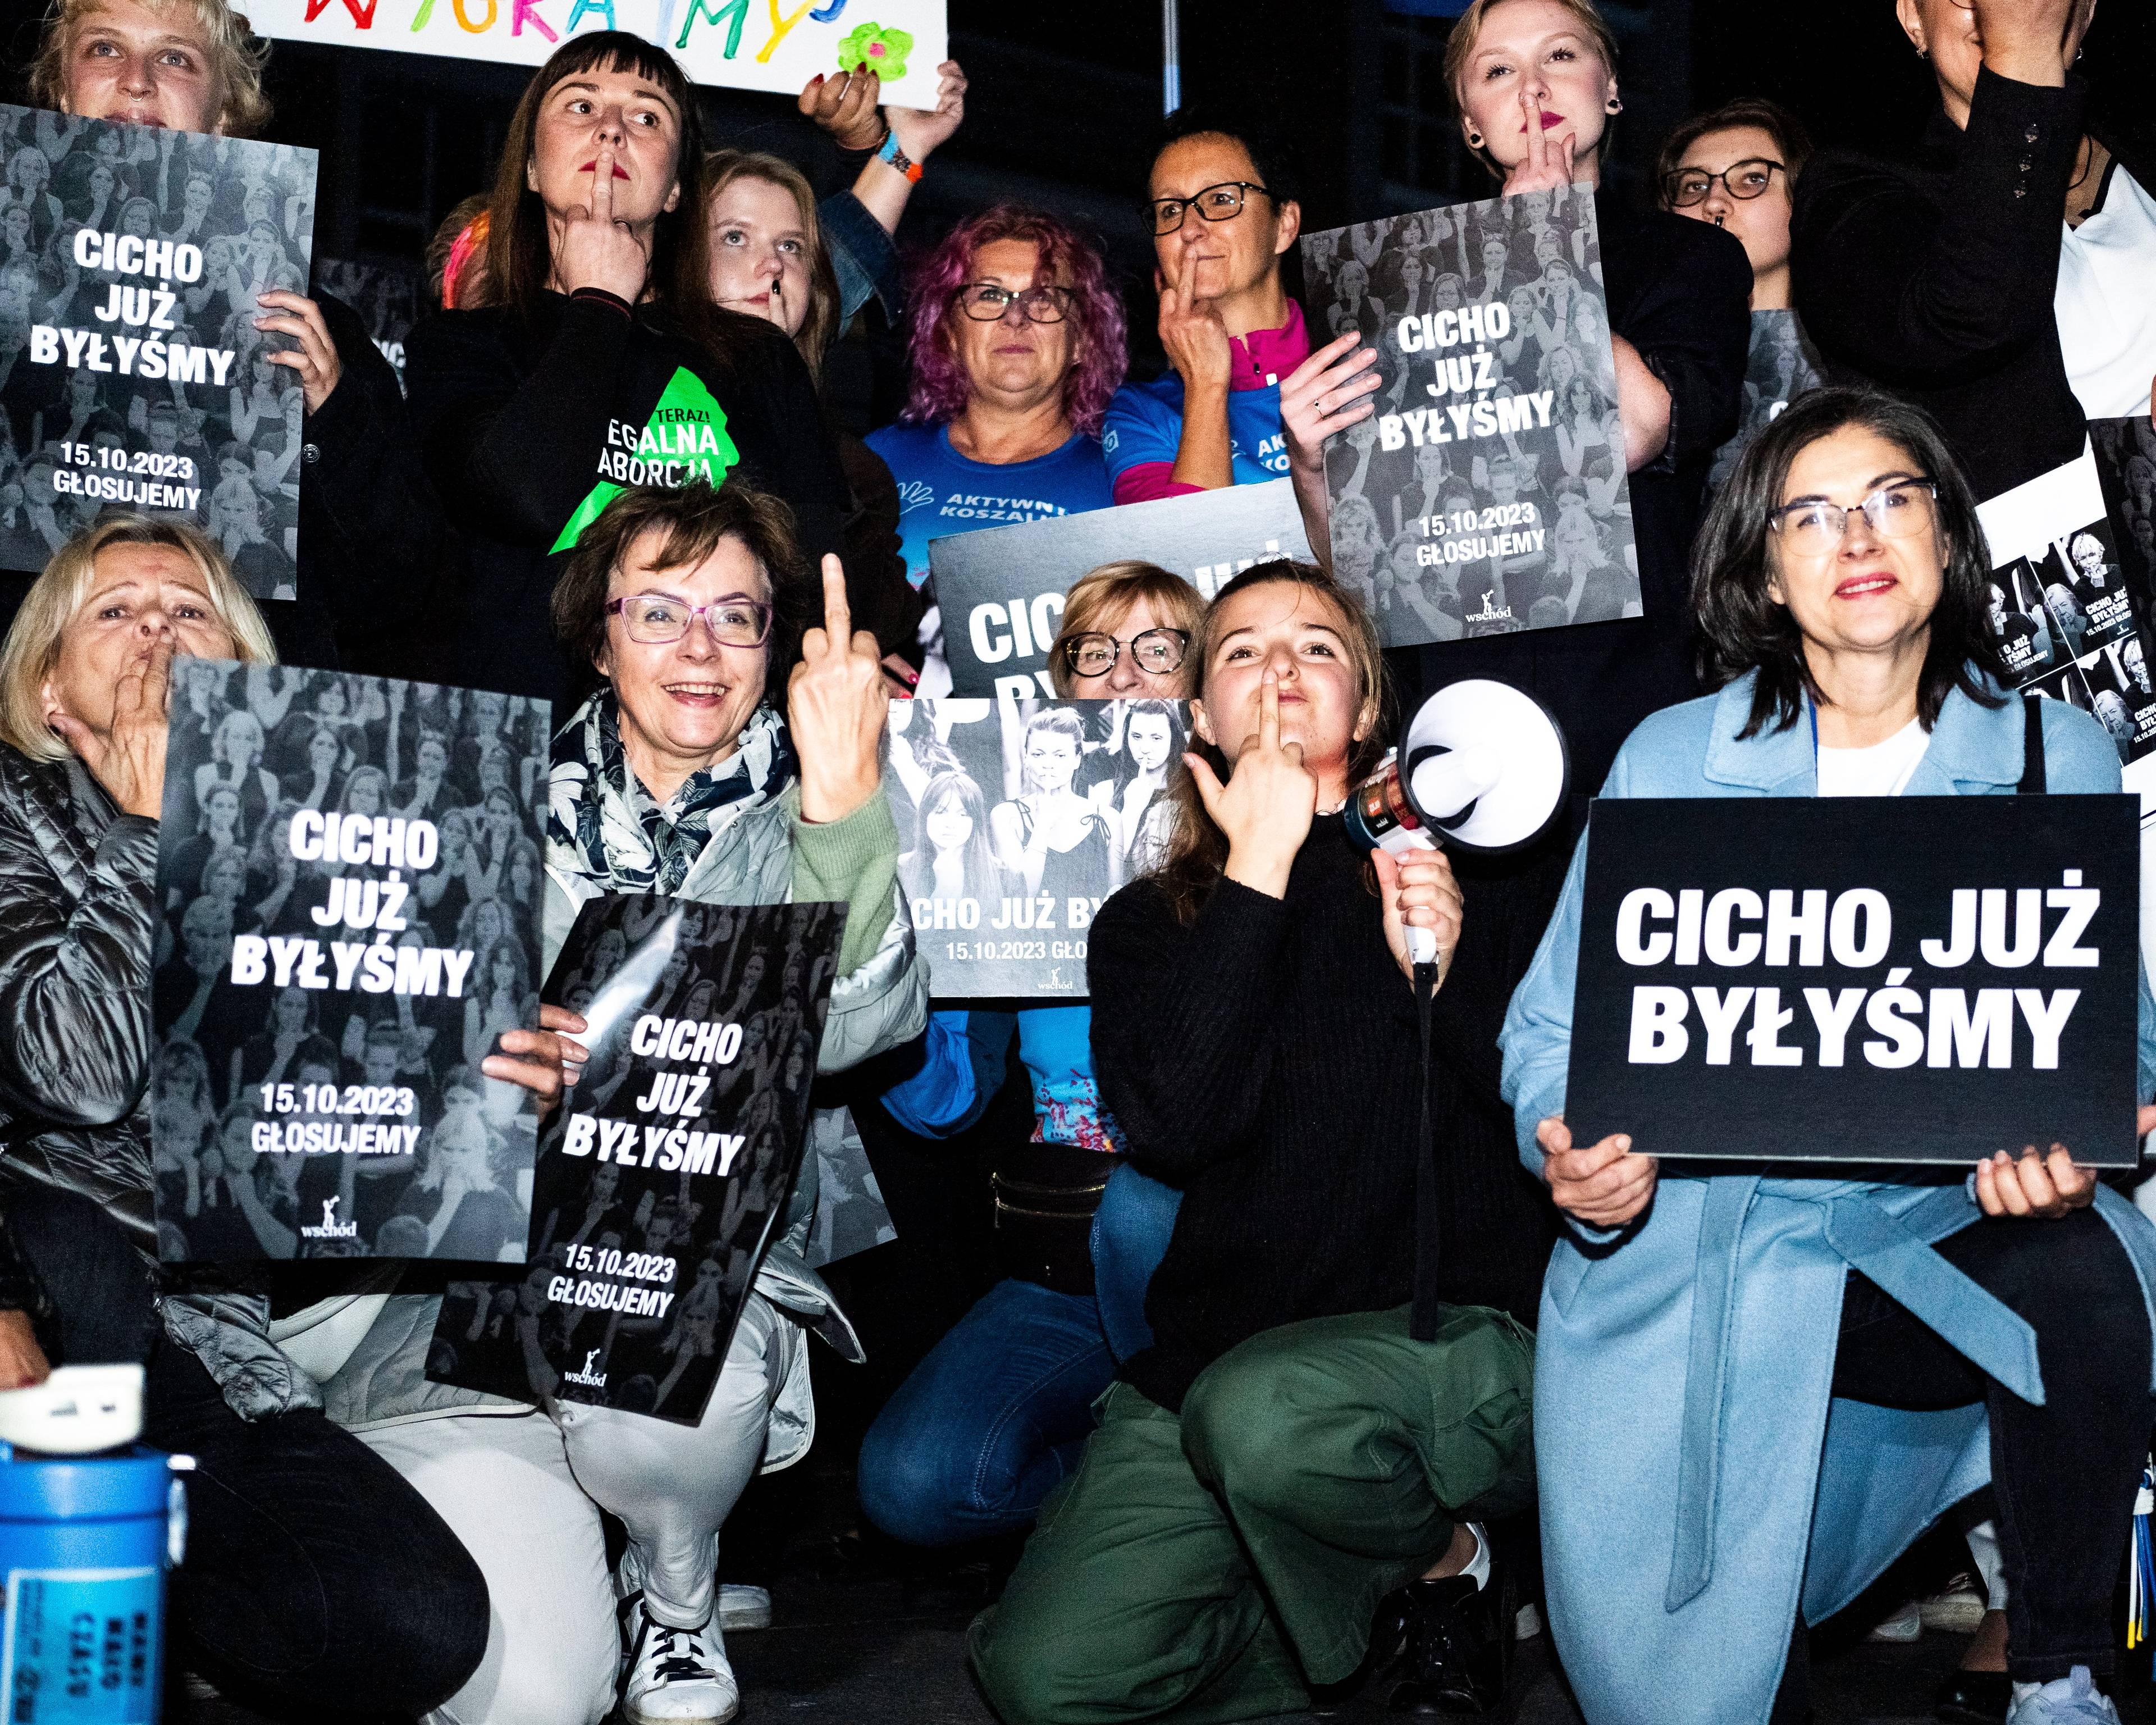 na zdjęciu grupa kobiet z banerami "Cicho to już byłyśmy"